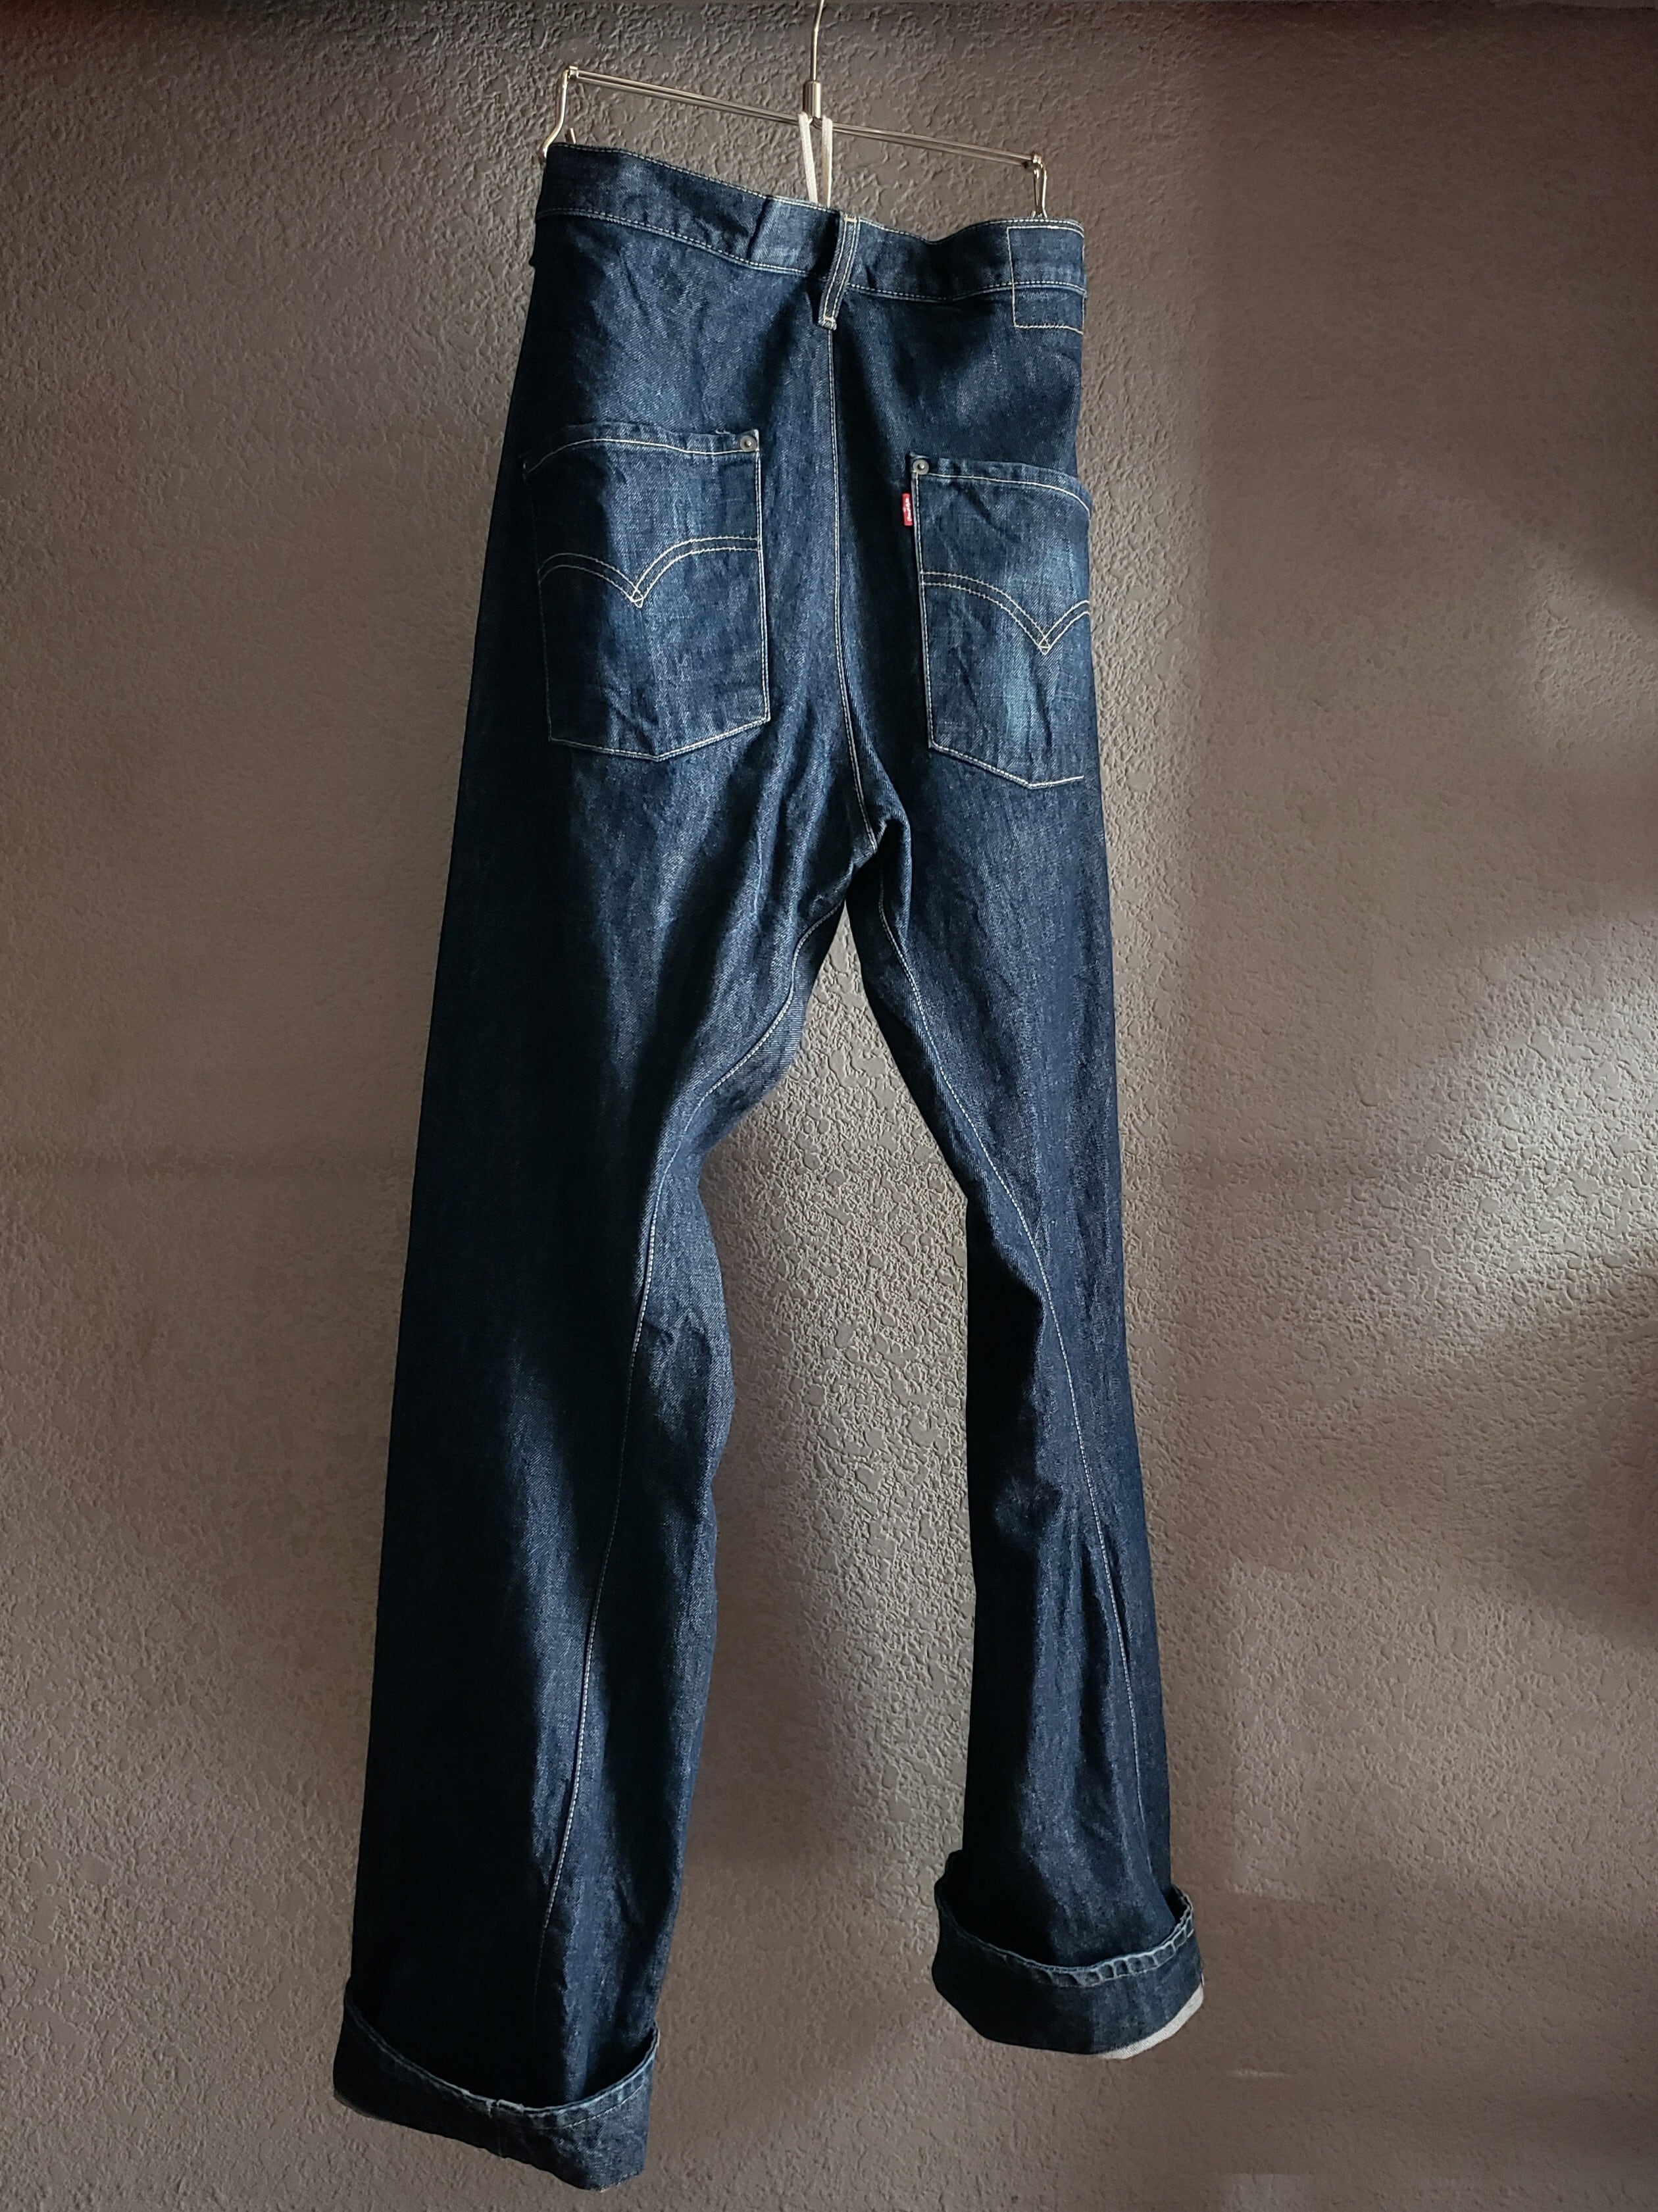 当社の ユーロ リーバイス エンジニアード ジーンズ EURO Levi's Engineered Jeans デニムパンツ 実寸  batesmartin.com